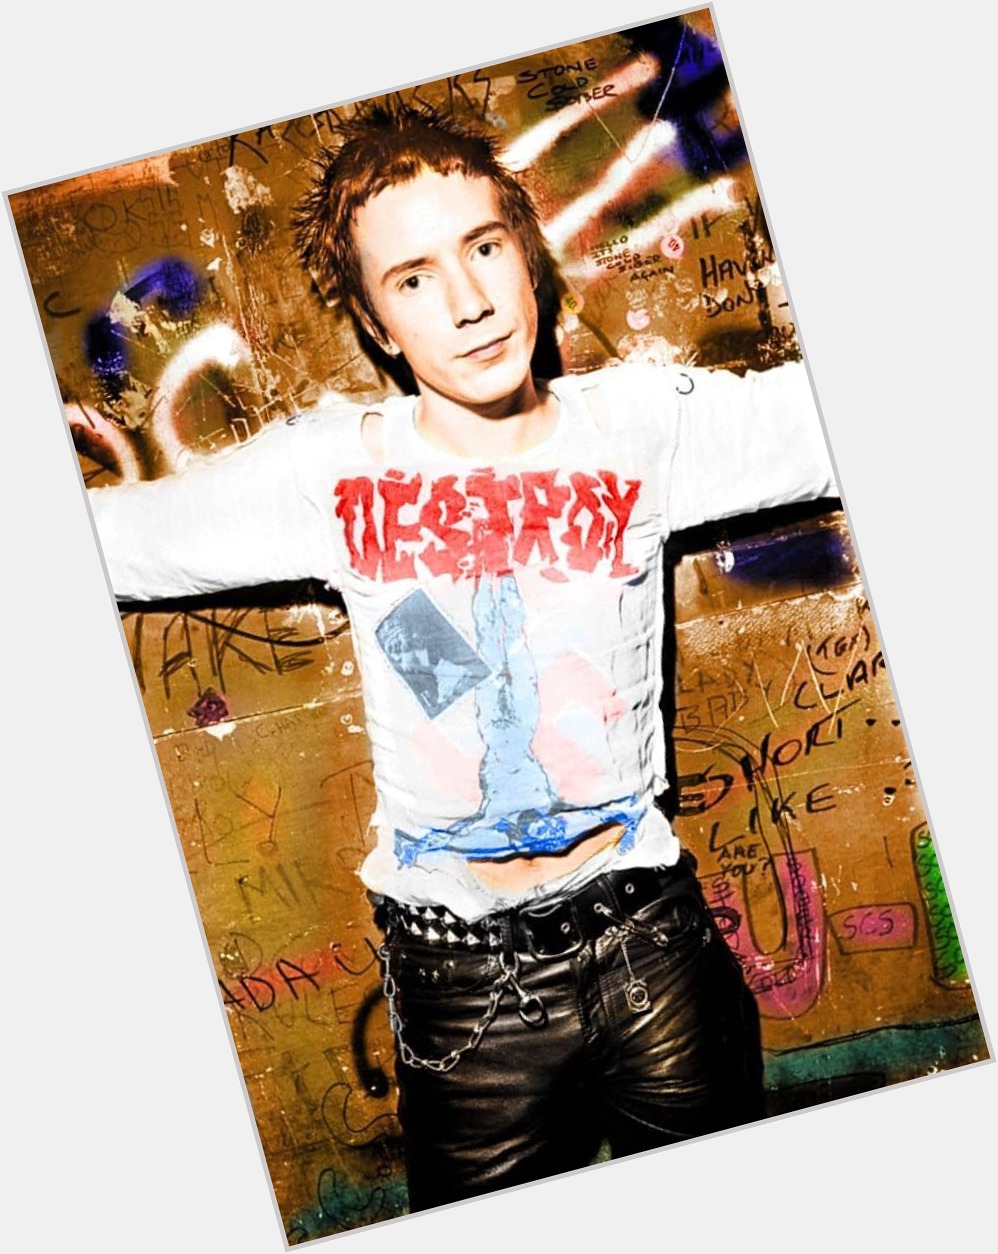 Happy Birthday to Johnny Rotten (John Lydon).
(31 January 1956)  